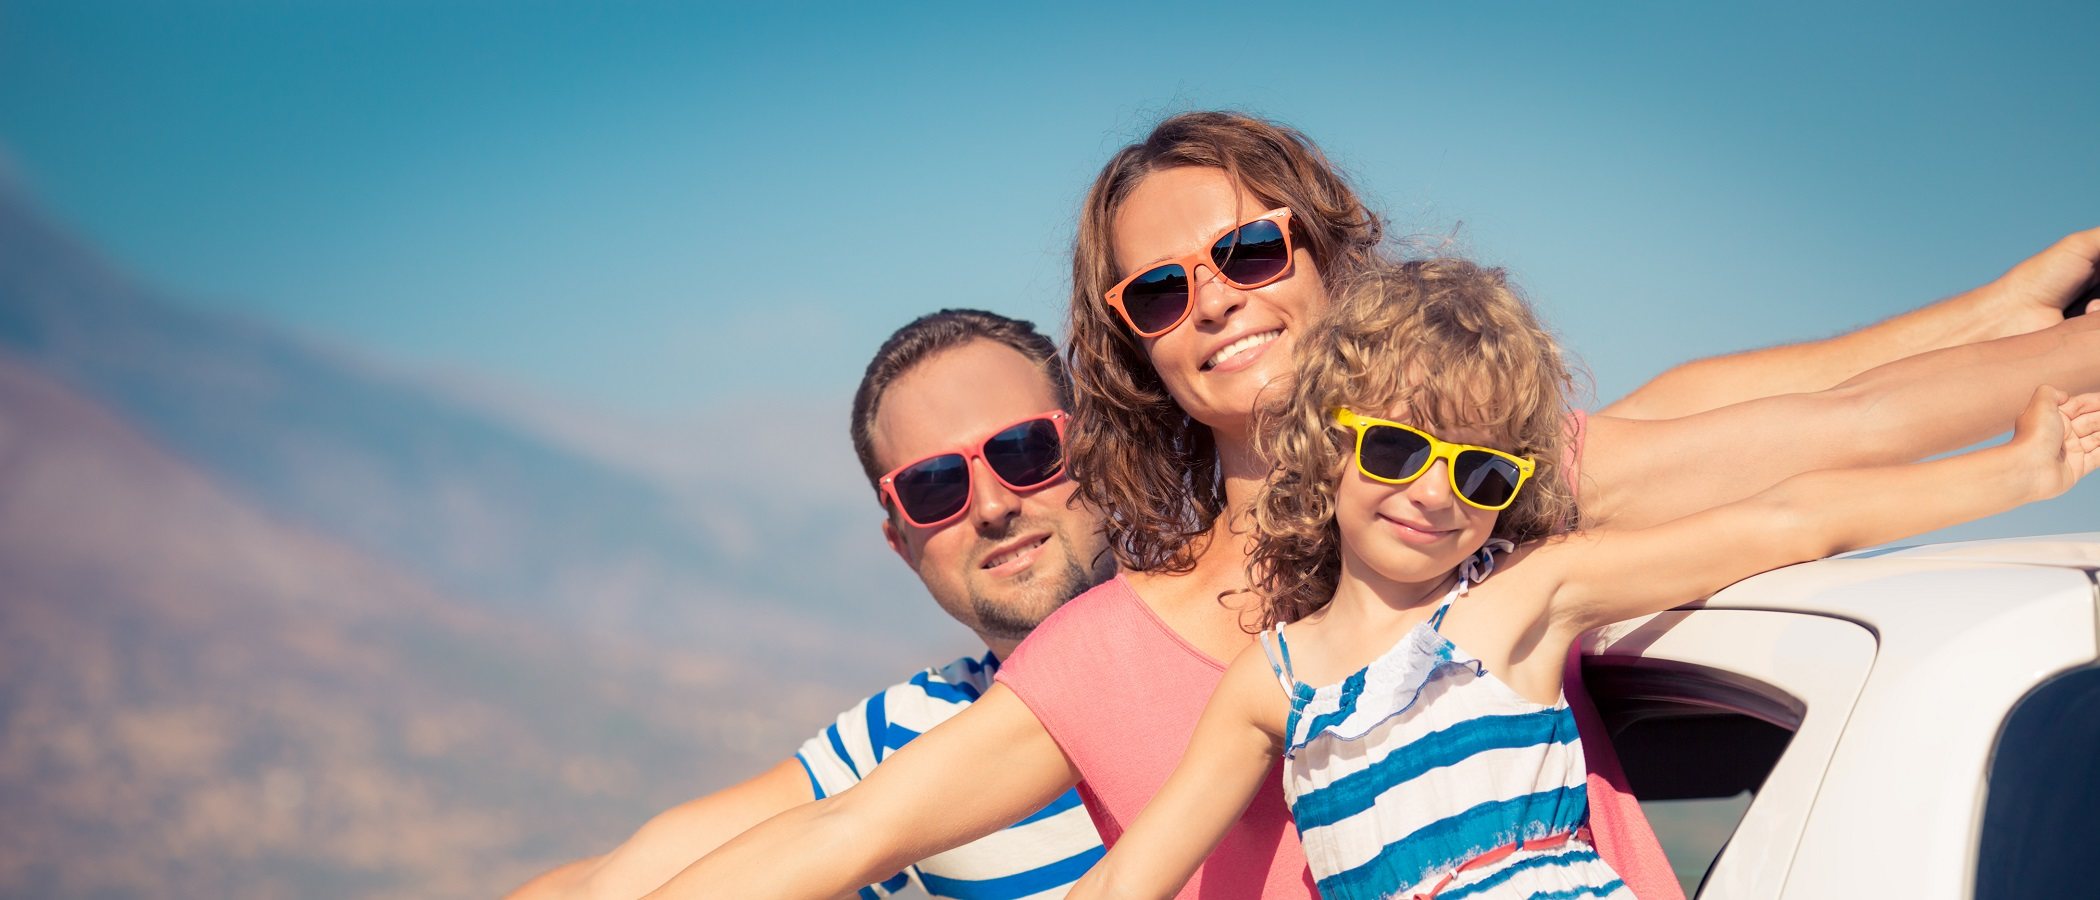 Vacaciones familiares sin estrés: 10 claves para conseguirlo